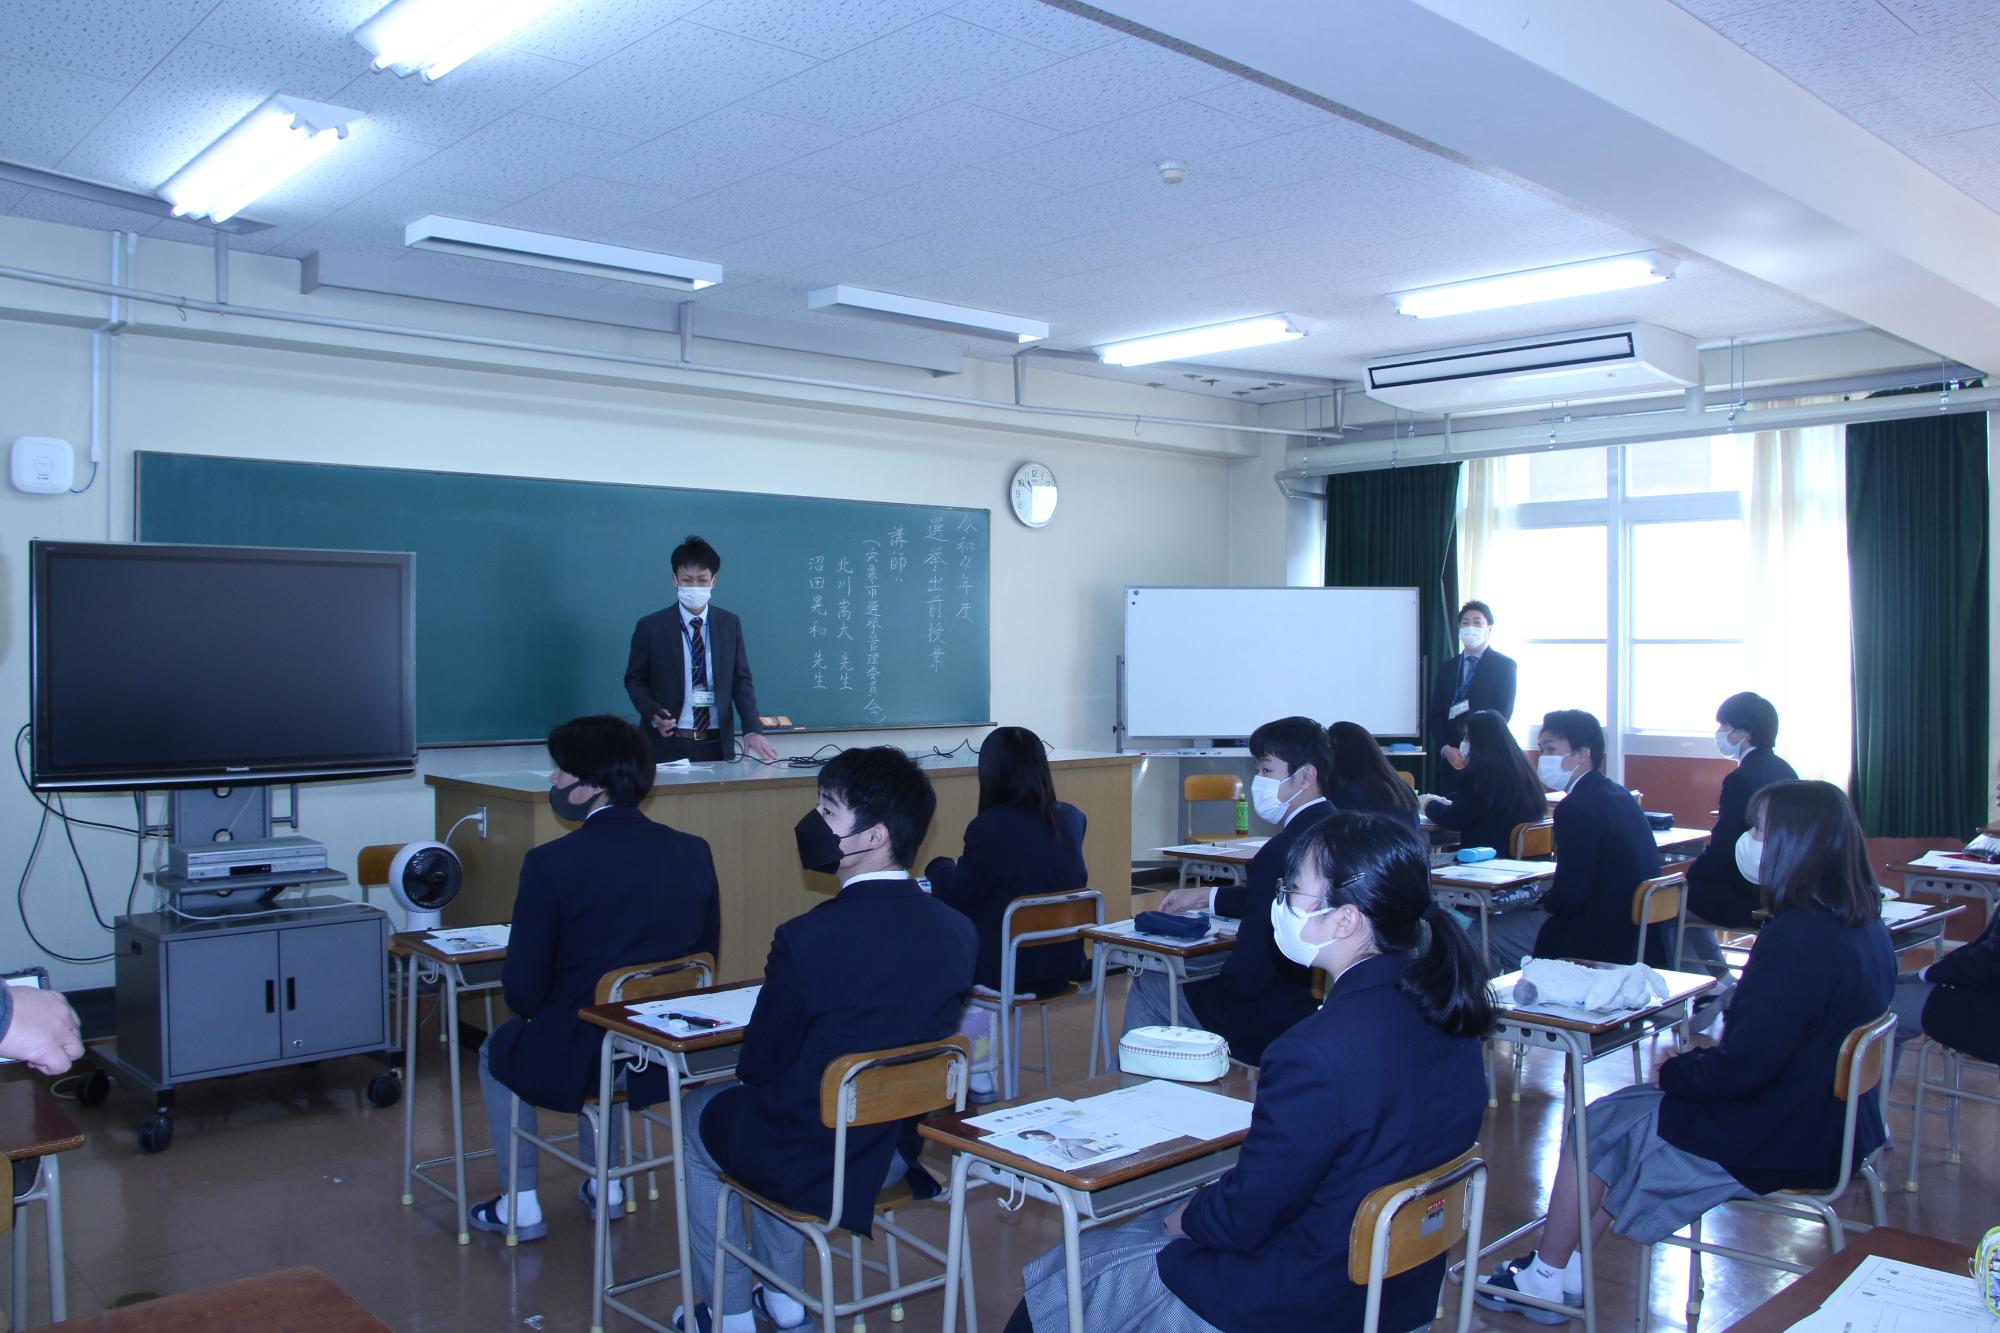 伊和高生が市の選挙管理委員会の職員から選挙の仕組みについて教室で講義を受けている写真